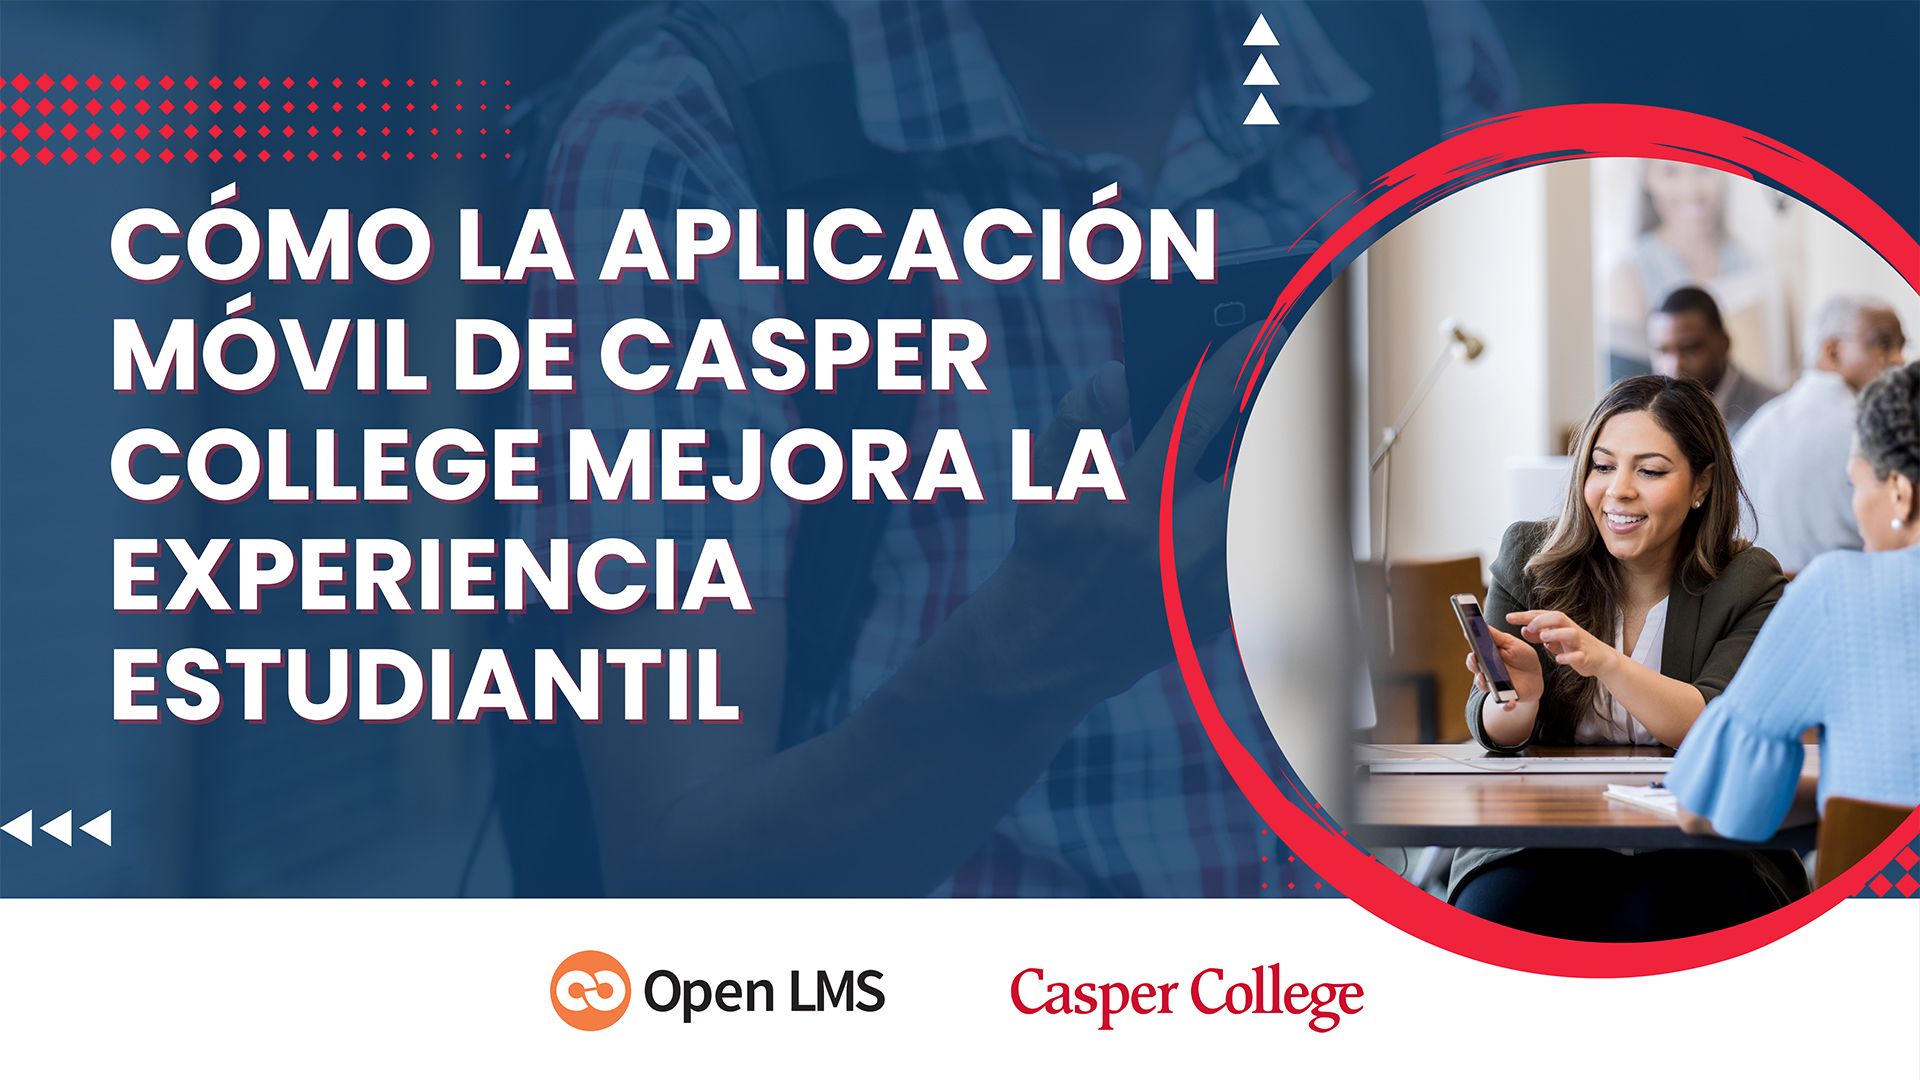 Cómo la aplicación móvil de Casper College mejora la experiencia estudiantil